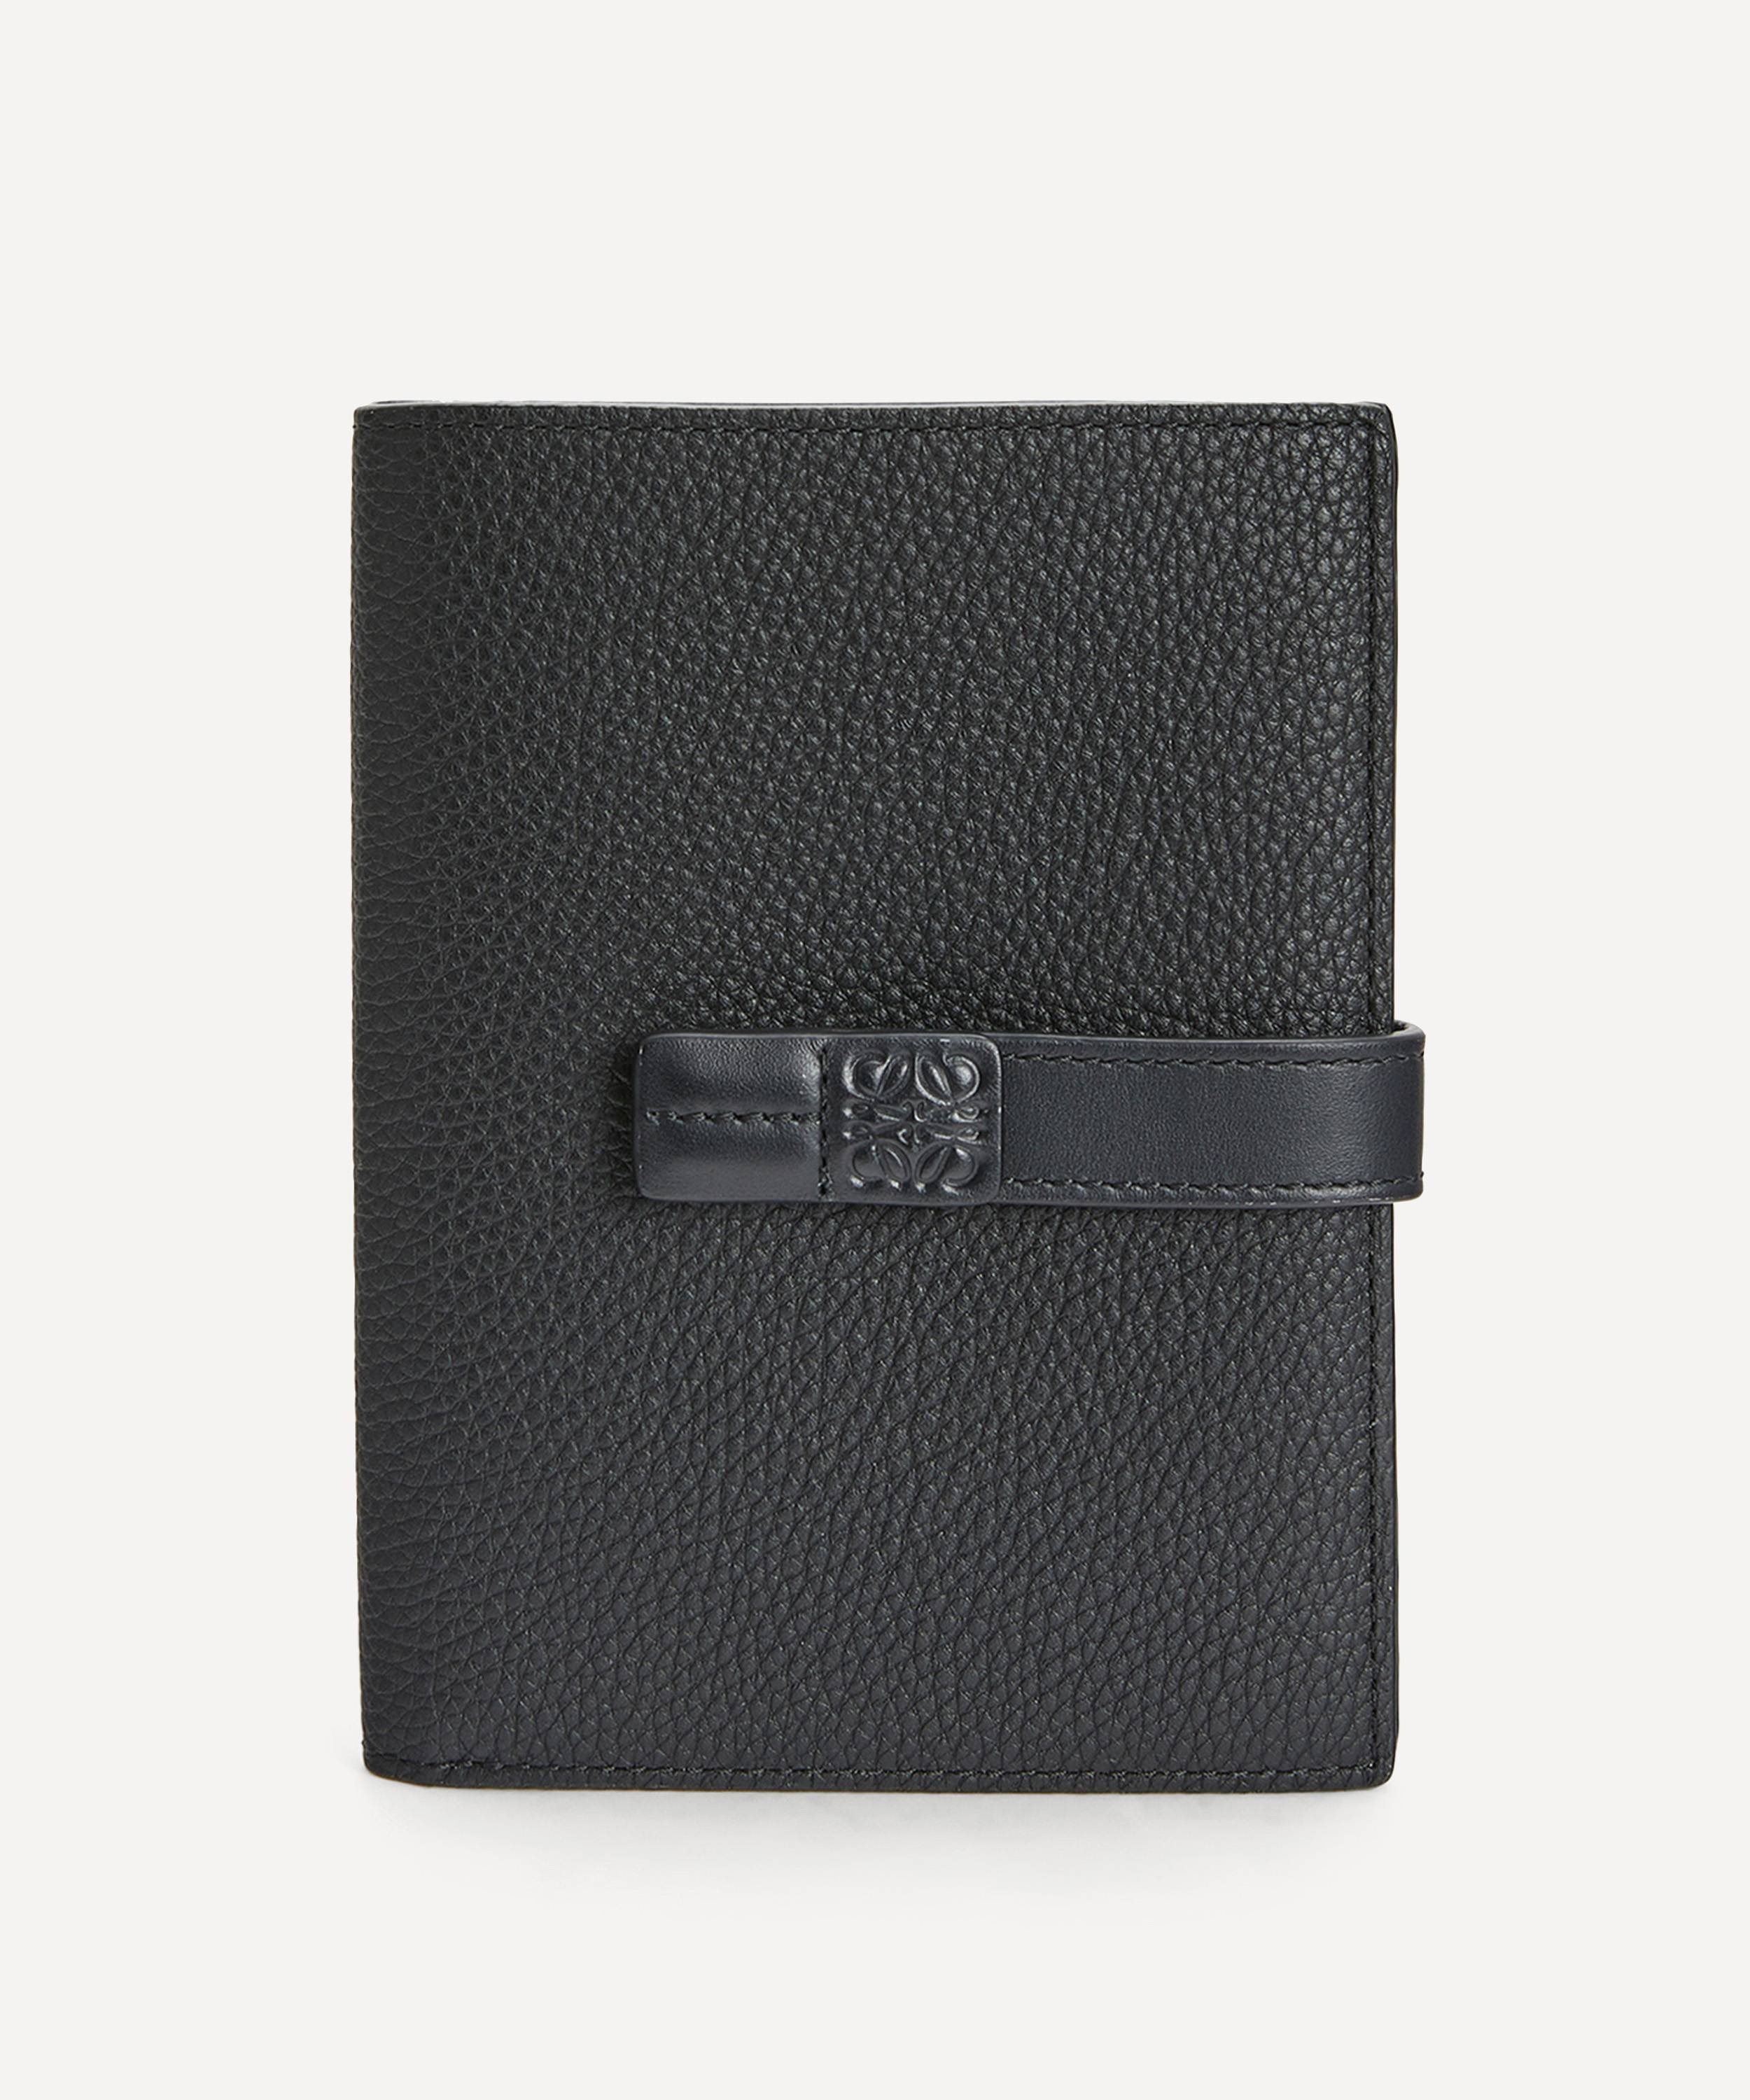 Loewe Medium Vertical Leather Wallet | Liberty